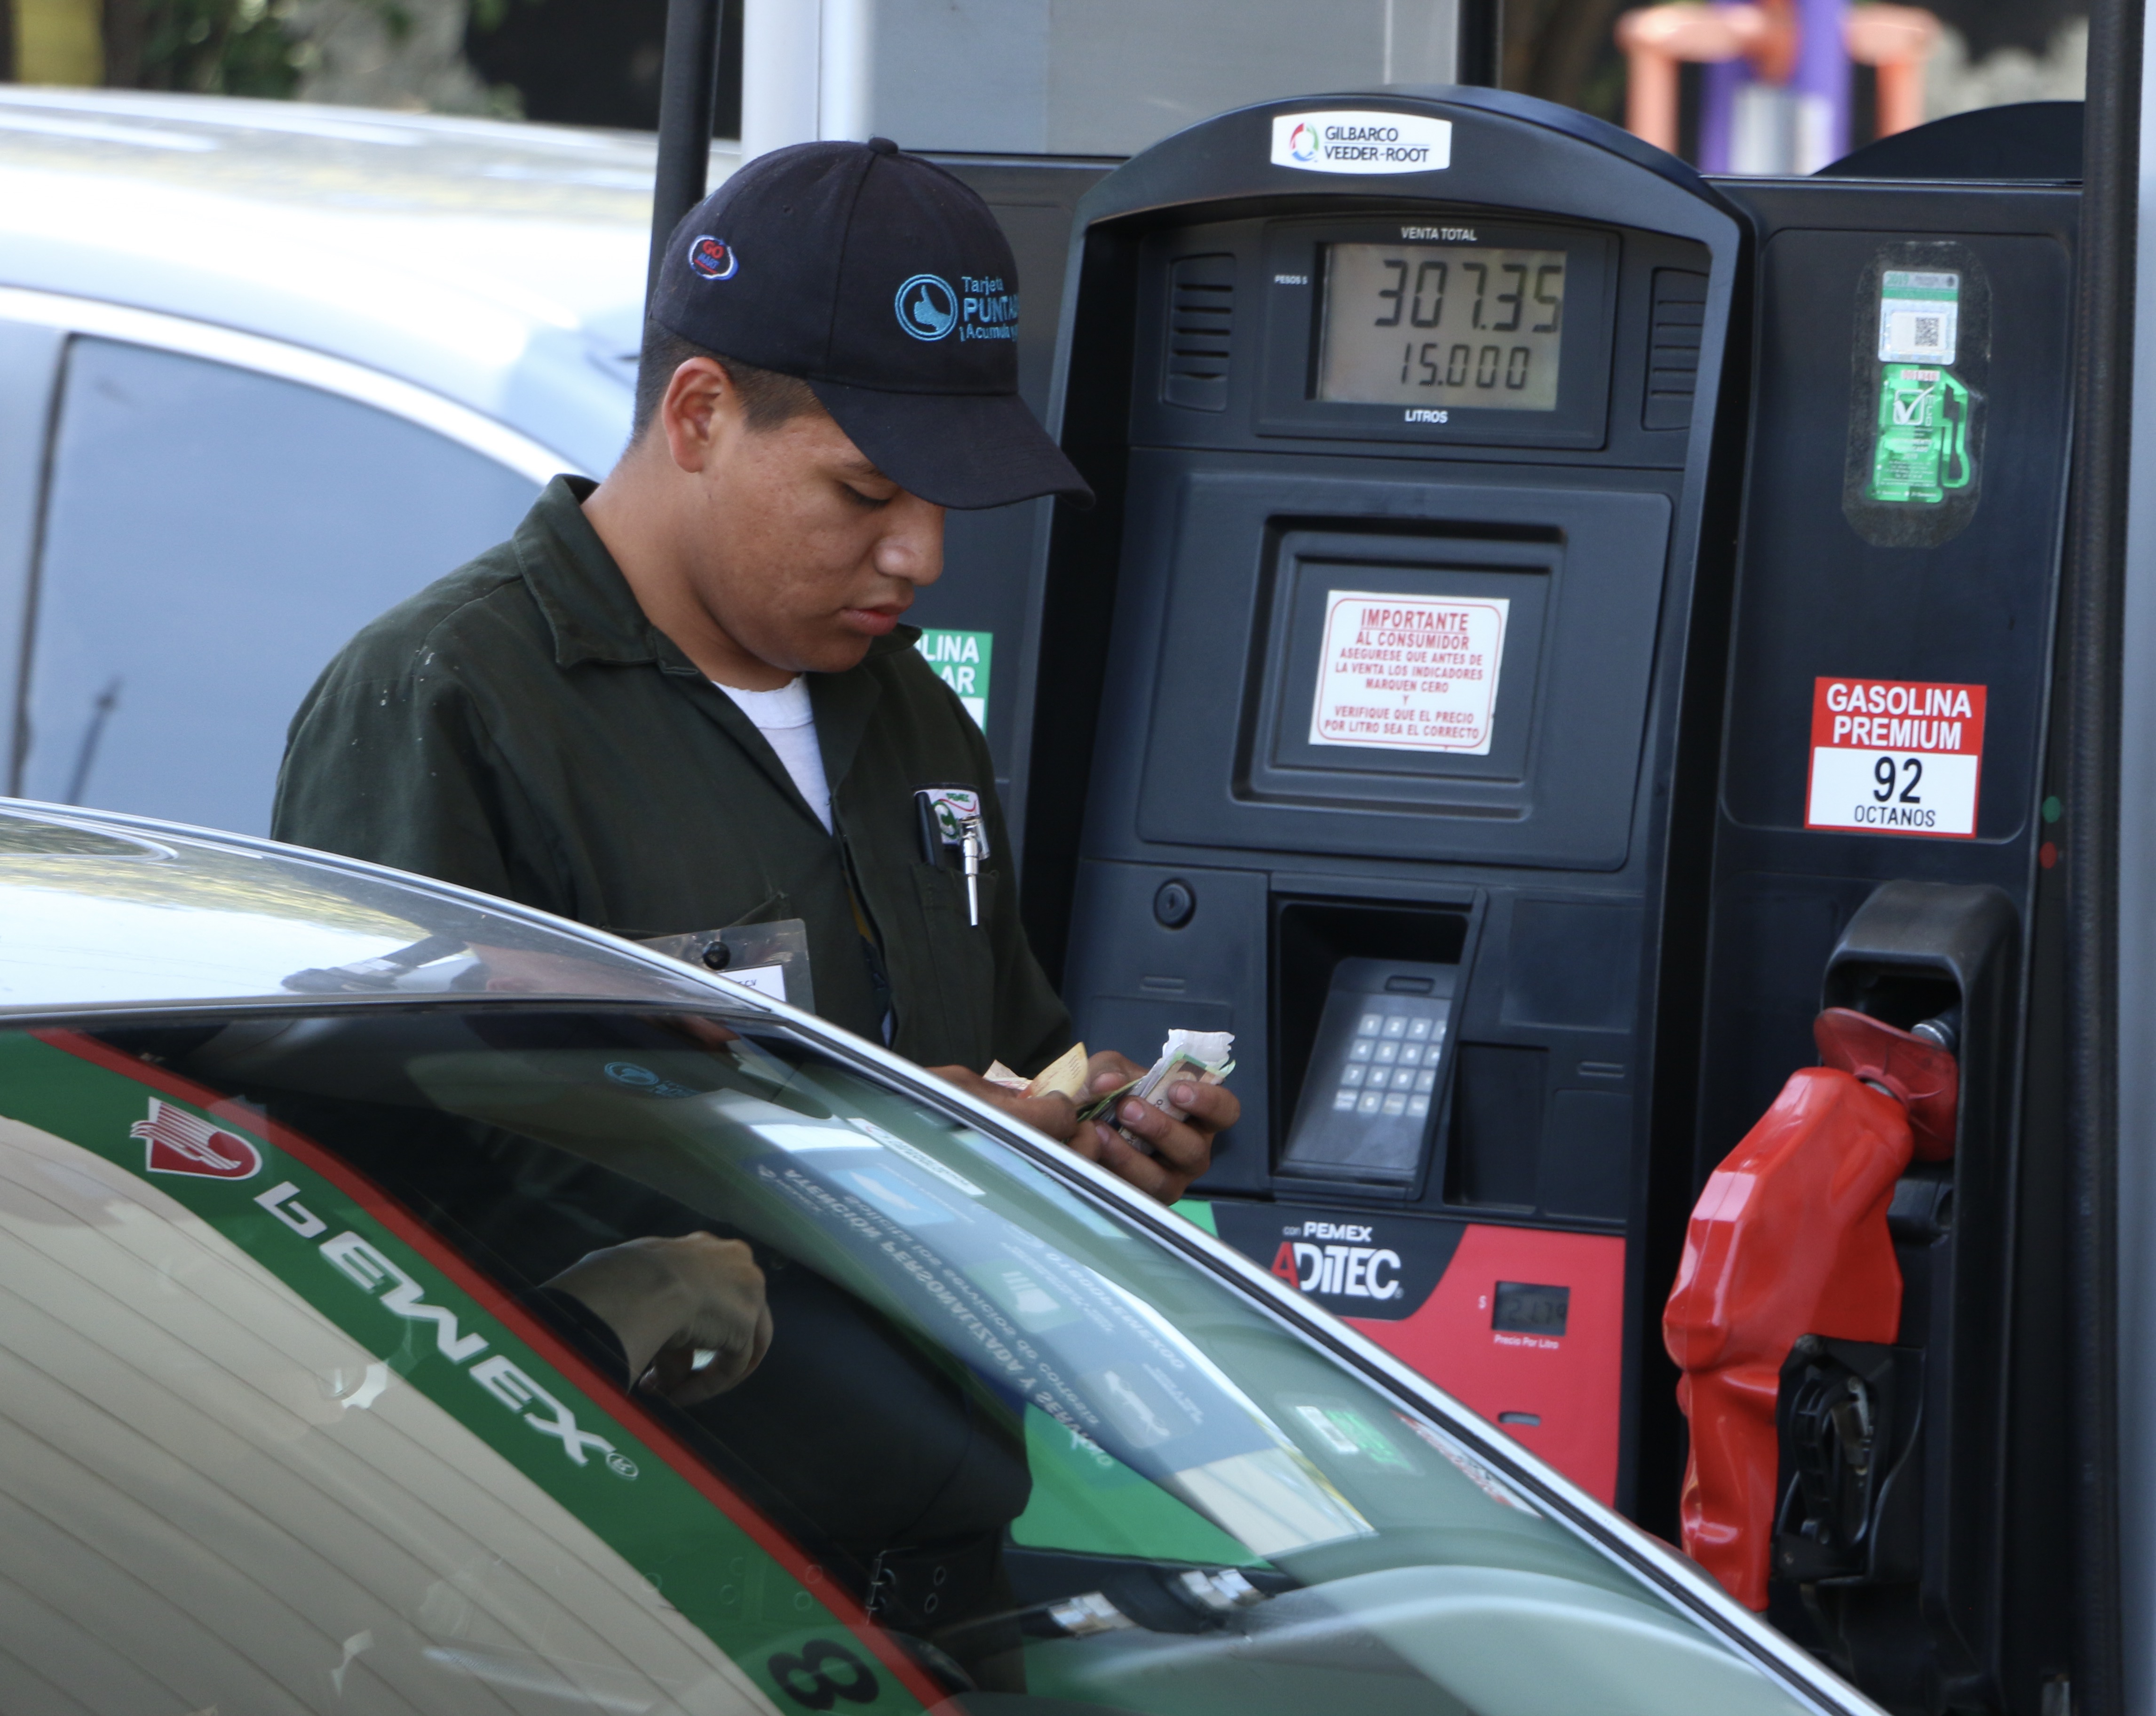 Despachadores en una gasolinera de México. (Foto: Archivo)